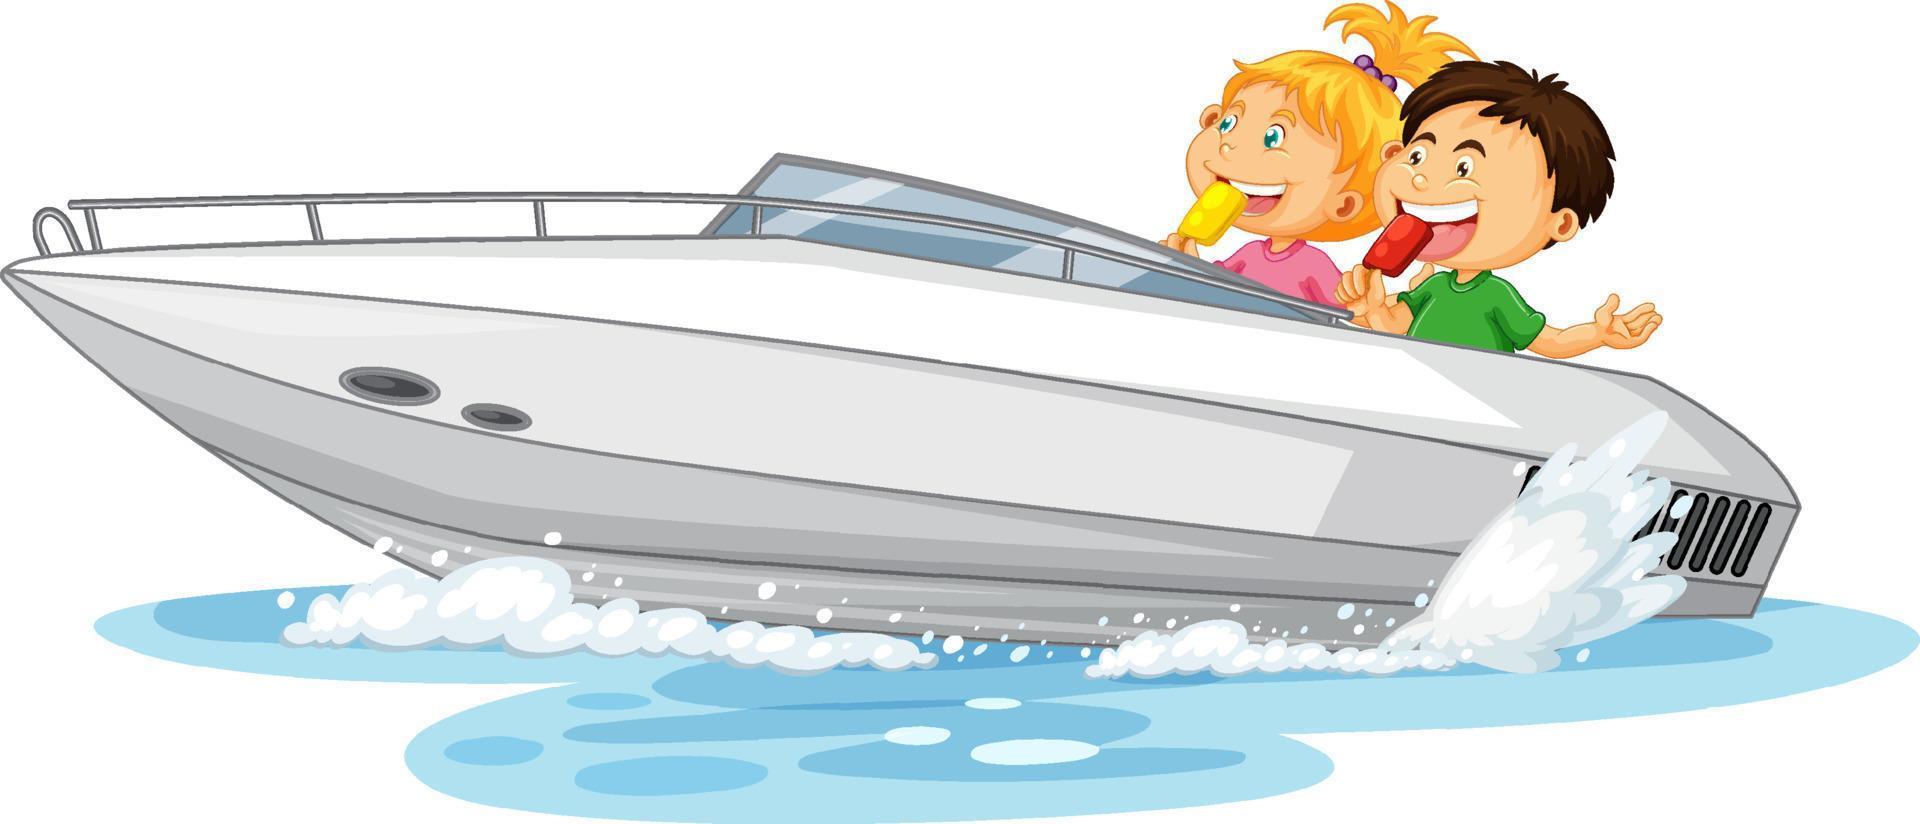 par barn på speedbåt på vit bakgrund vektor